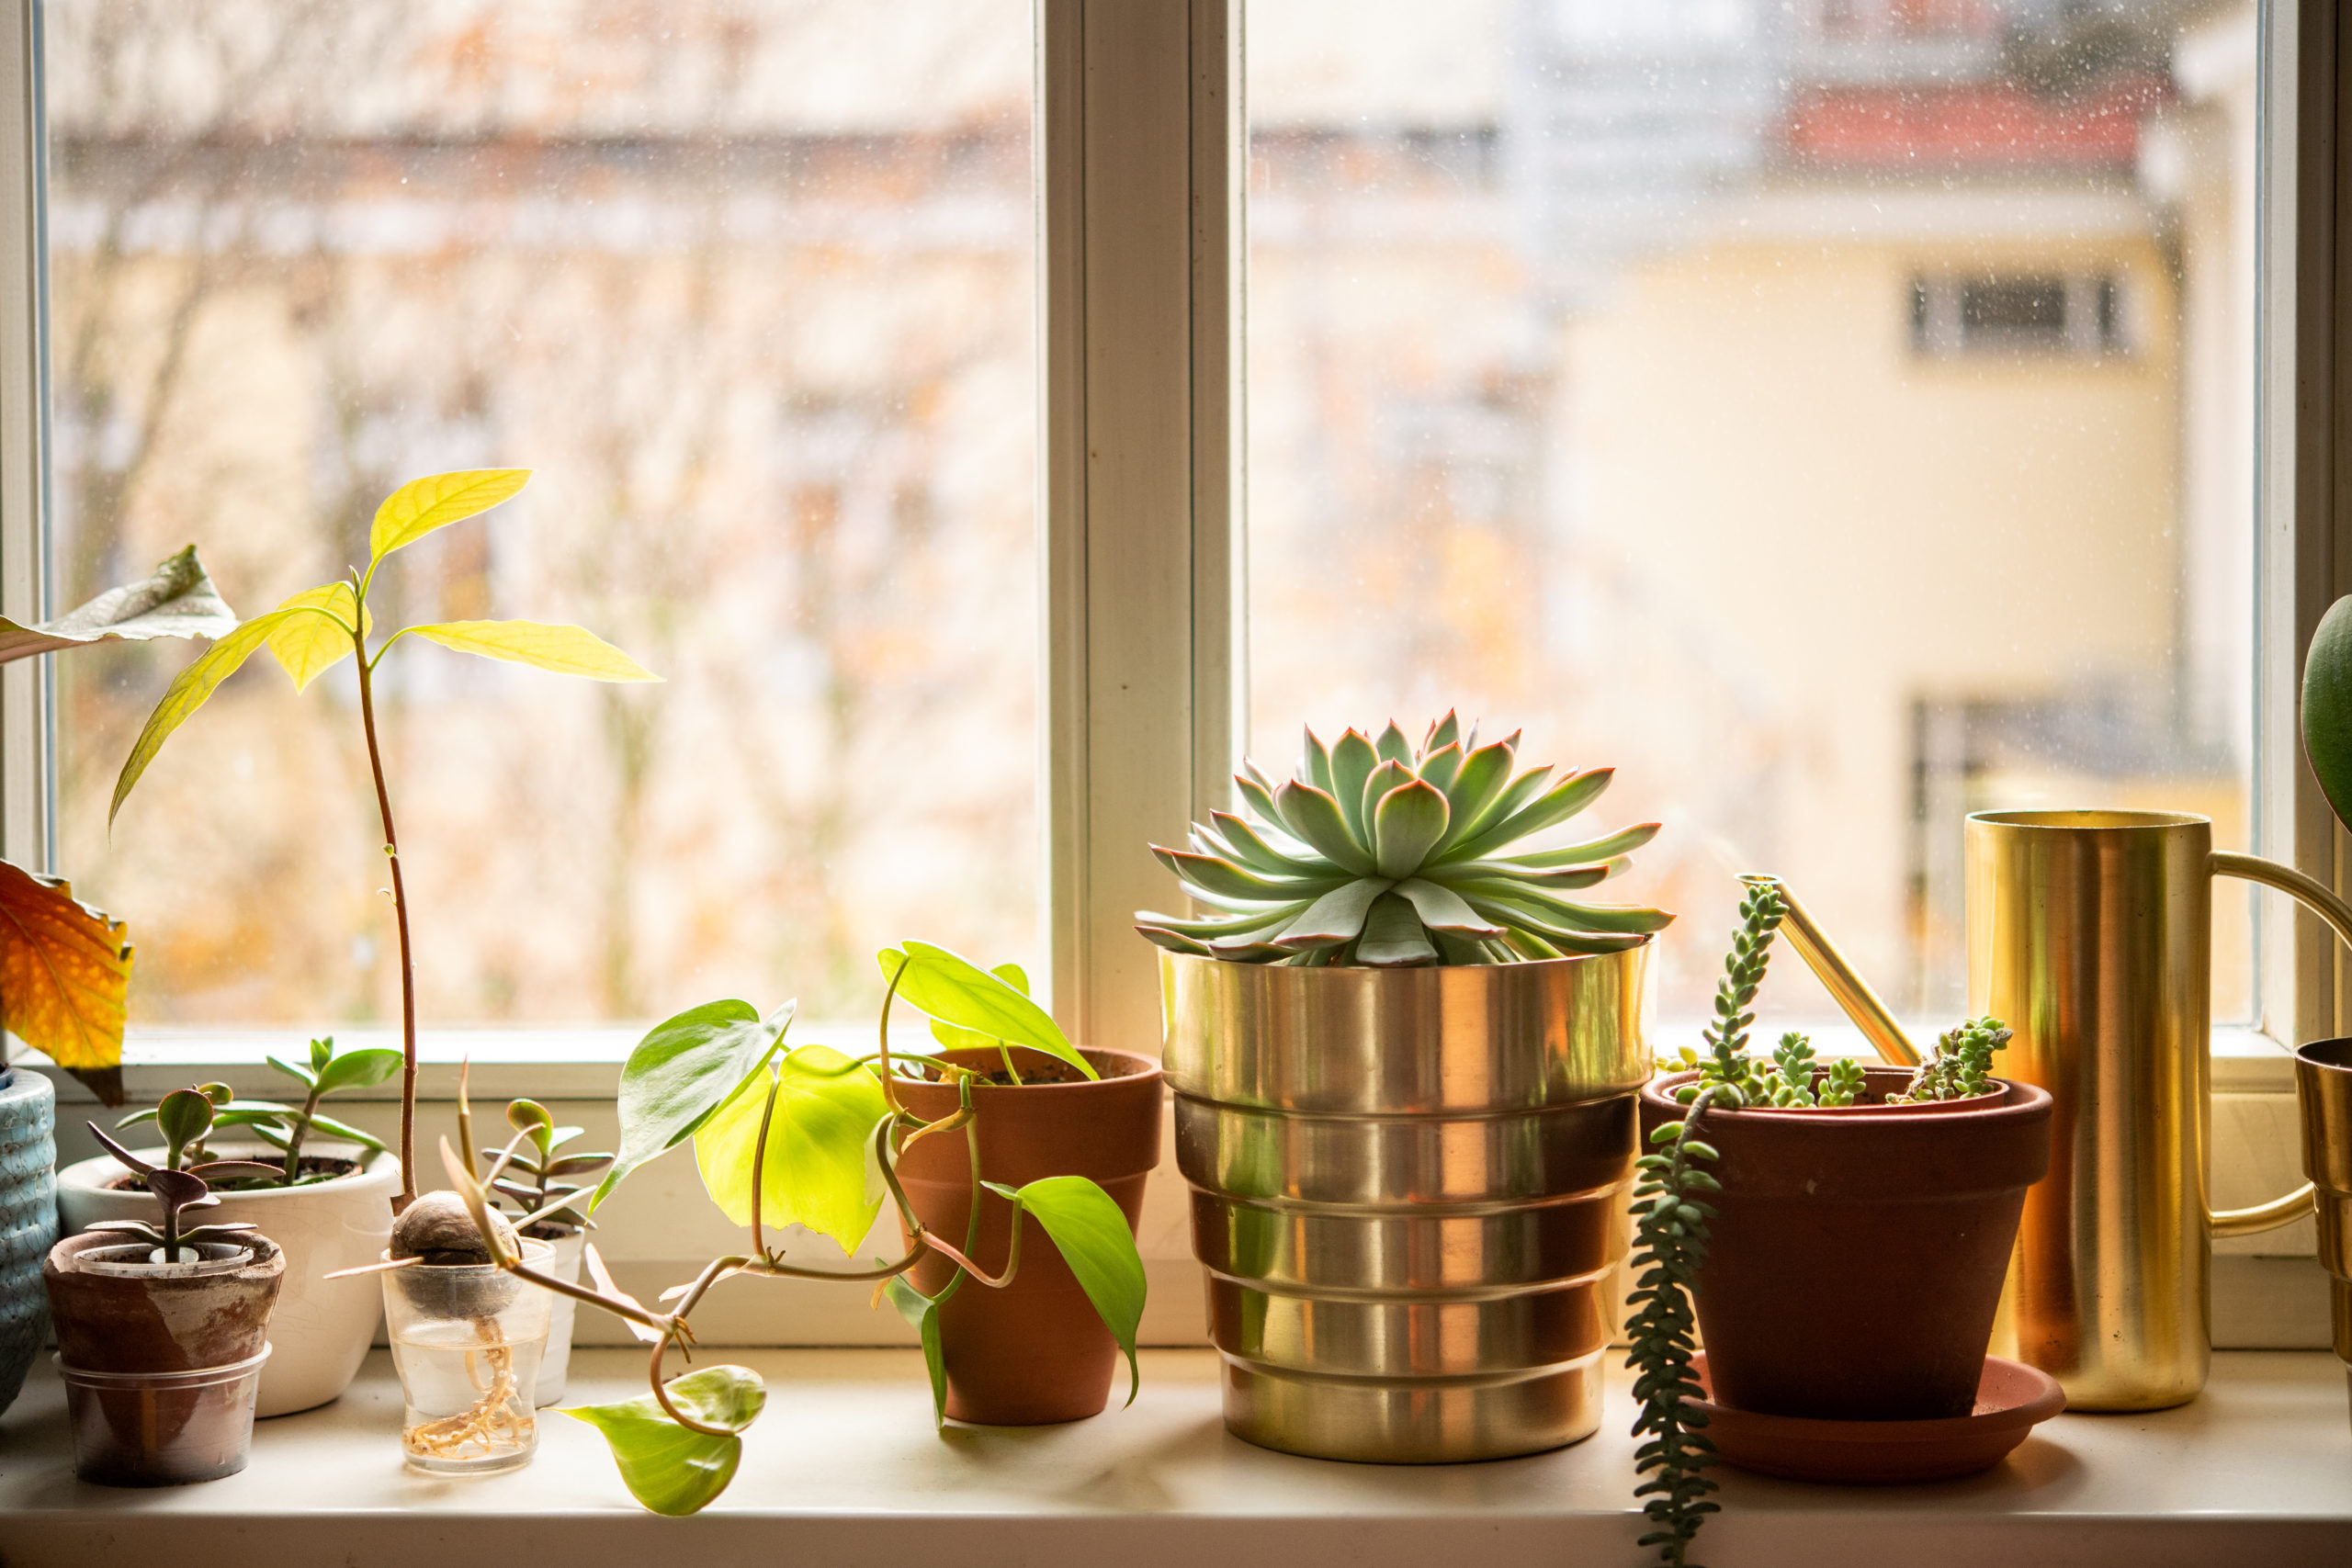 House plants on a window ledge.